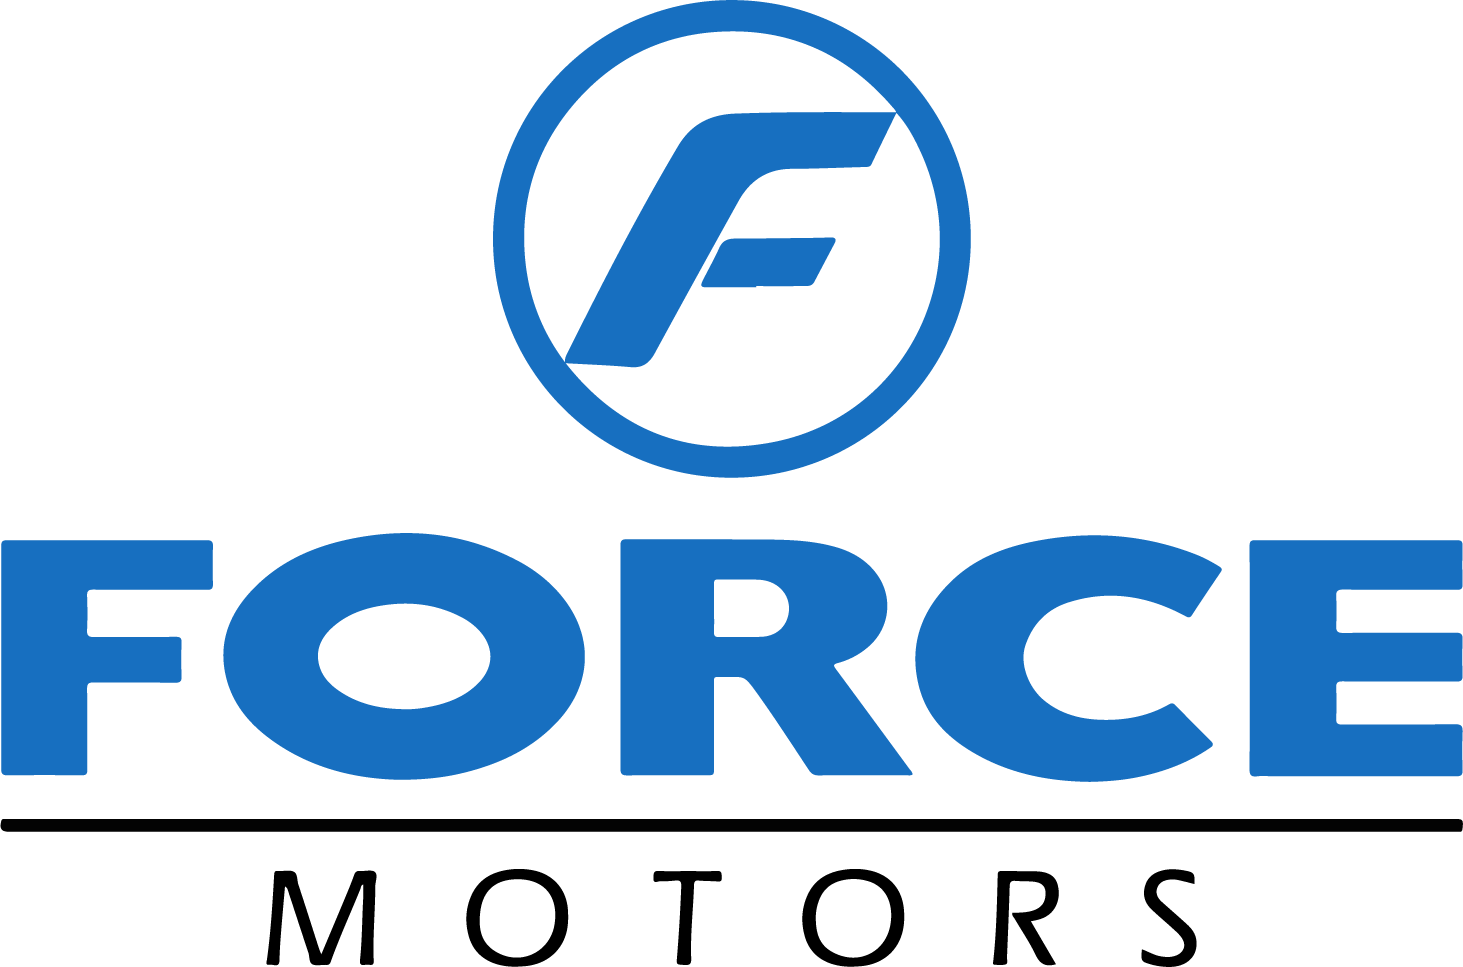 Force Motors logo large (transparent PNG)